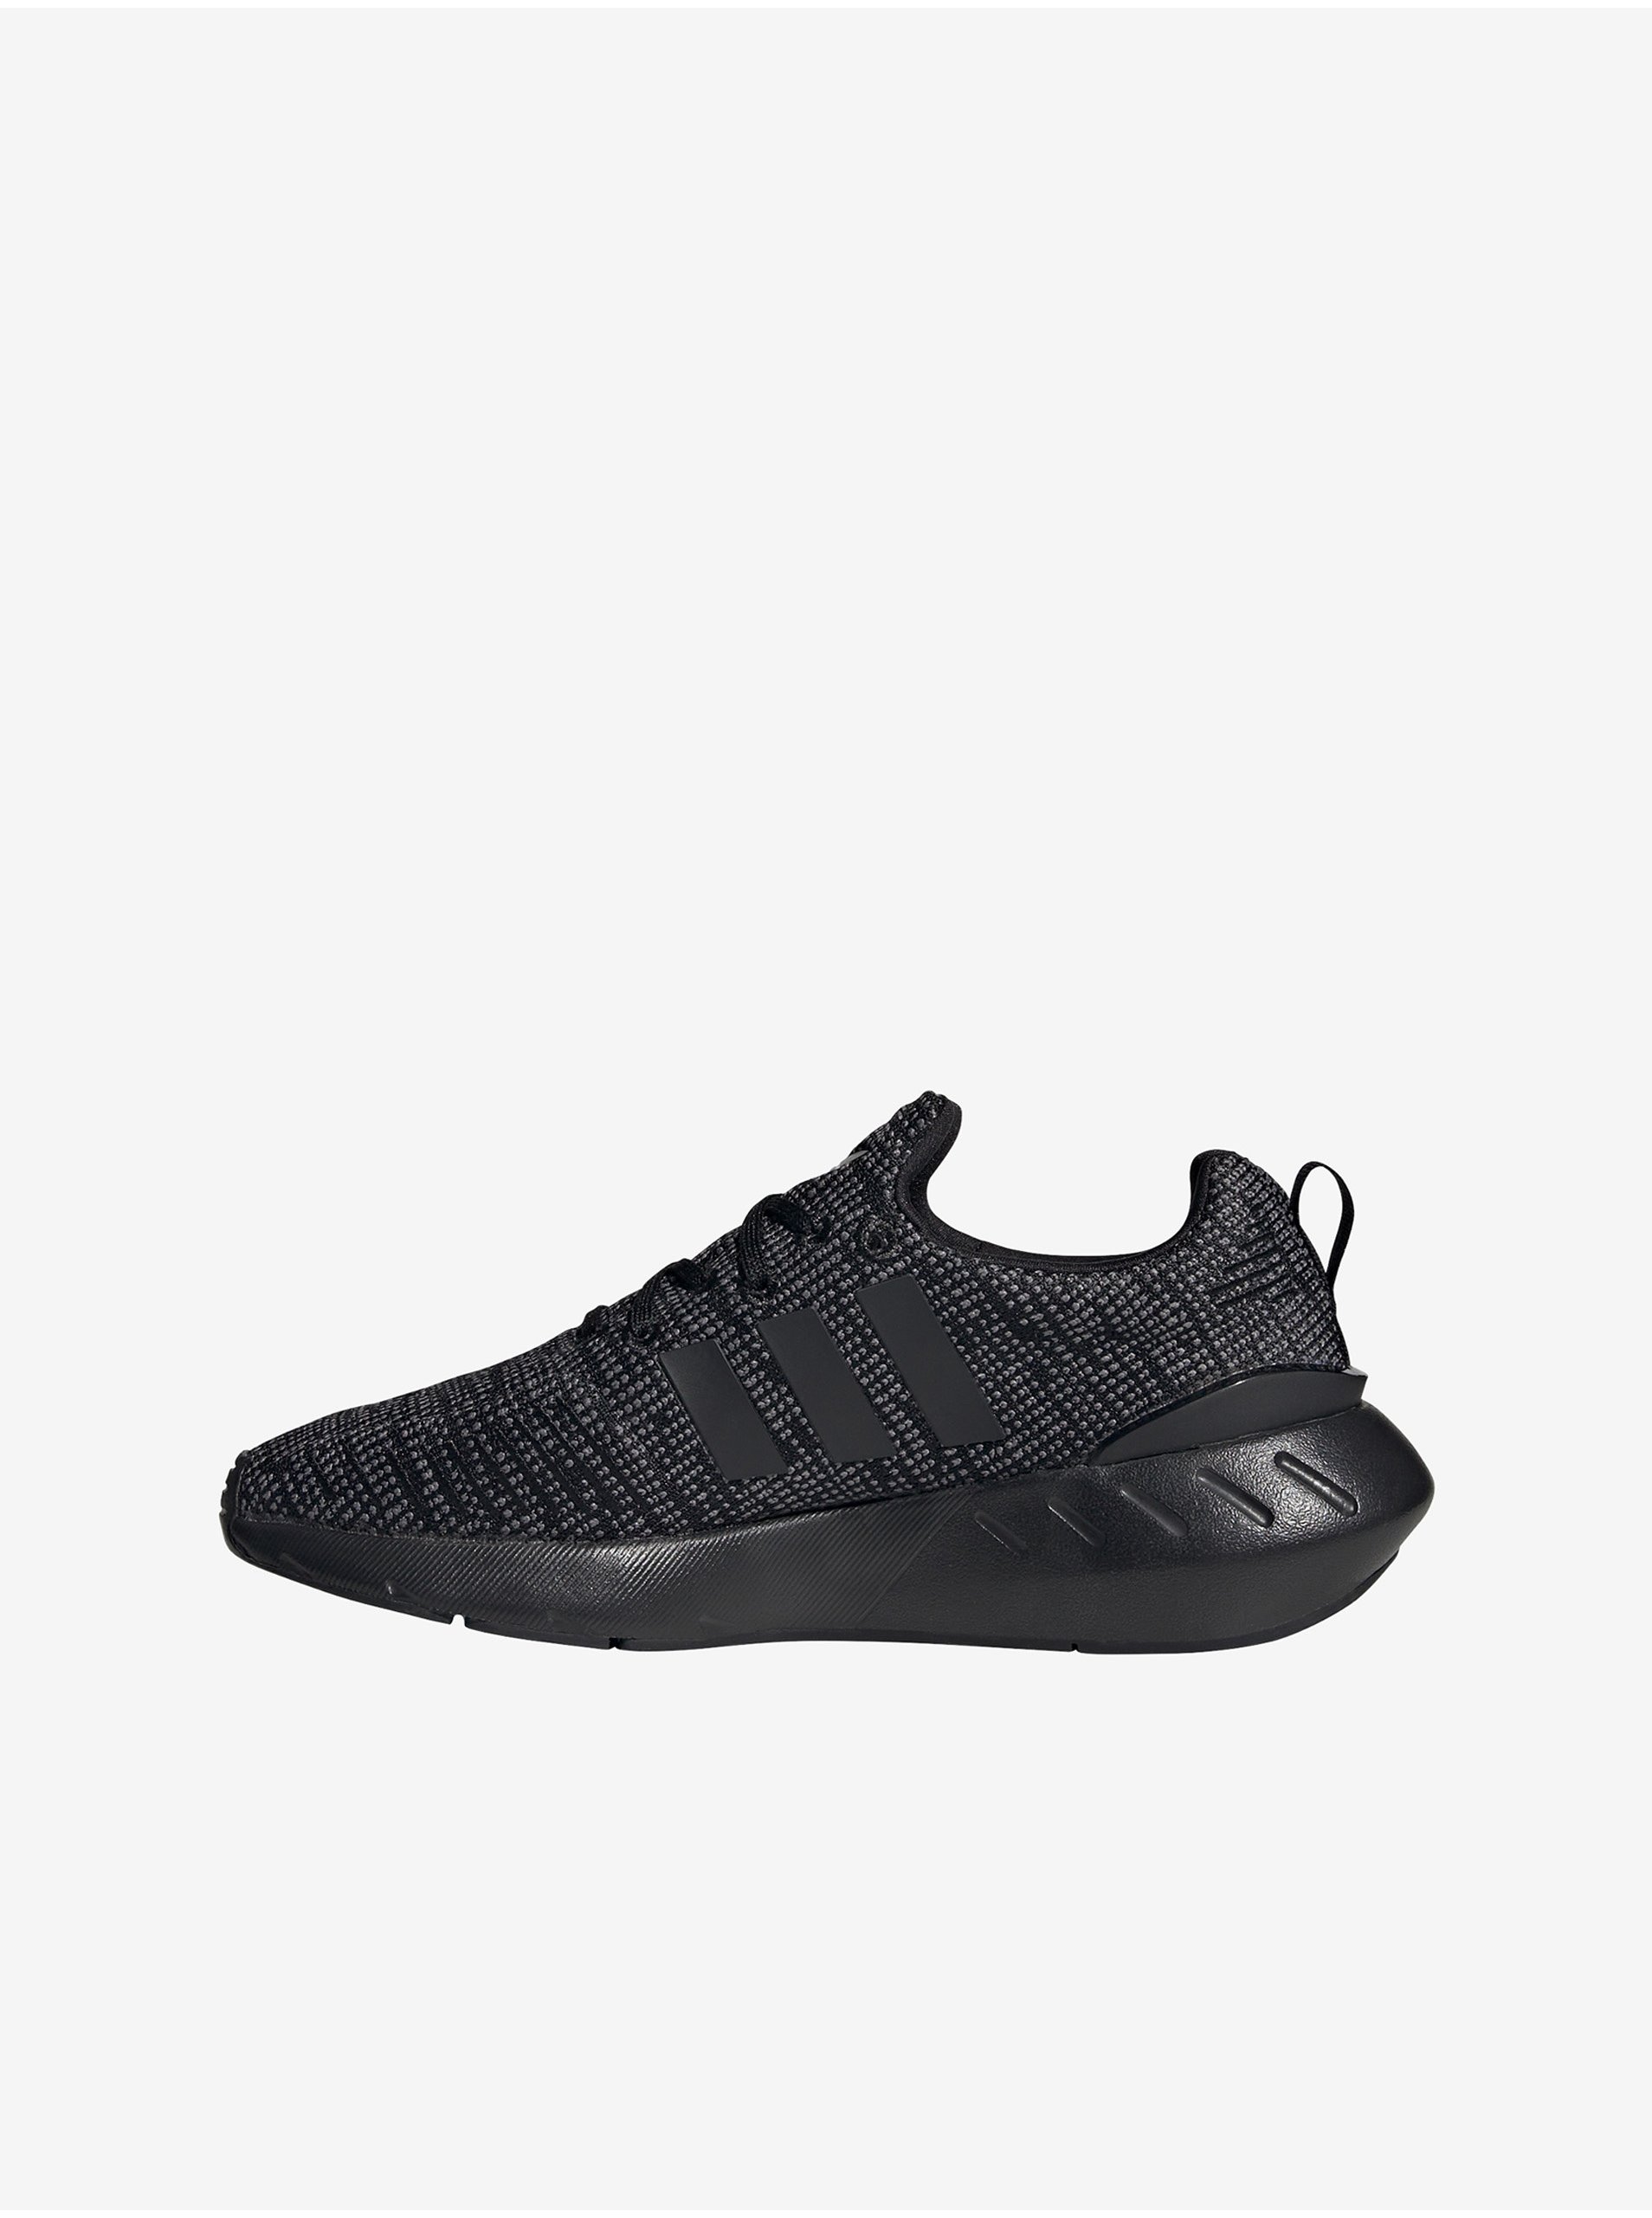 E-shop Čierne detské žíhané tenisky adidas Originals Swift Run 22